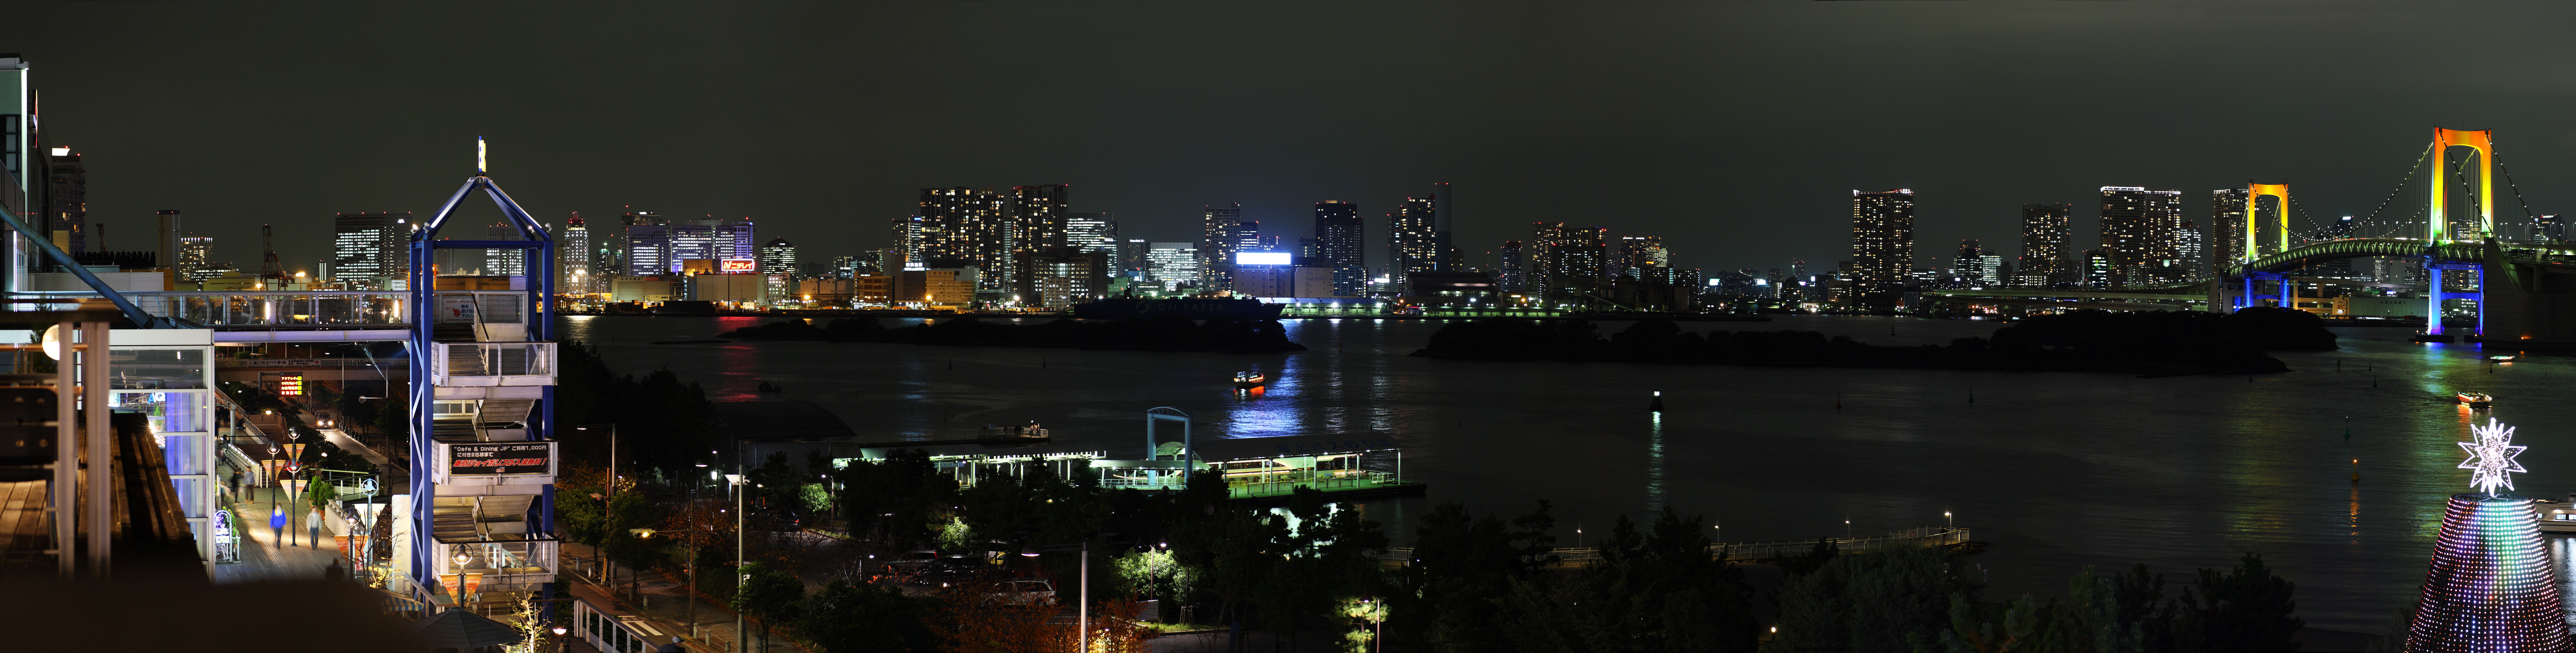 photo, la matire, libre, amnage, dcrivez, photo de la rserve,Une vue de la nuit d'Odaiba, pont, bijou, cours de la date, le bord de la mer a dvelopp le centre de ville rcemment